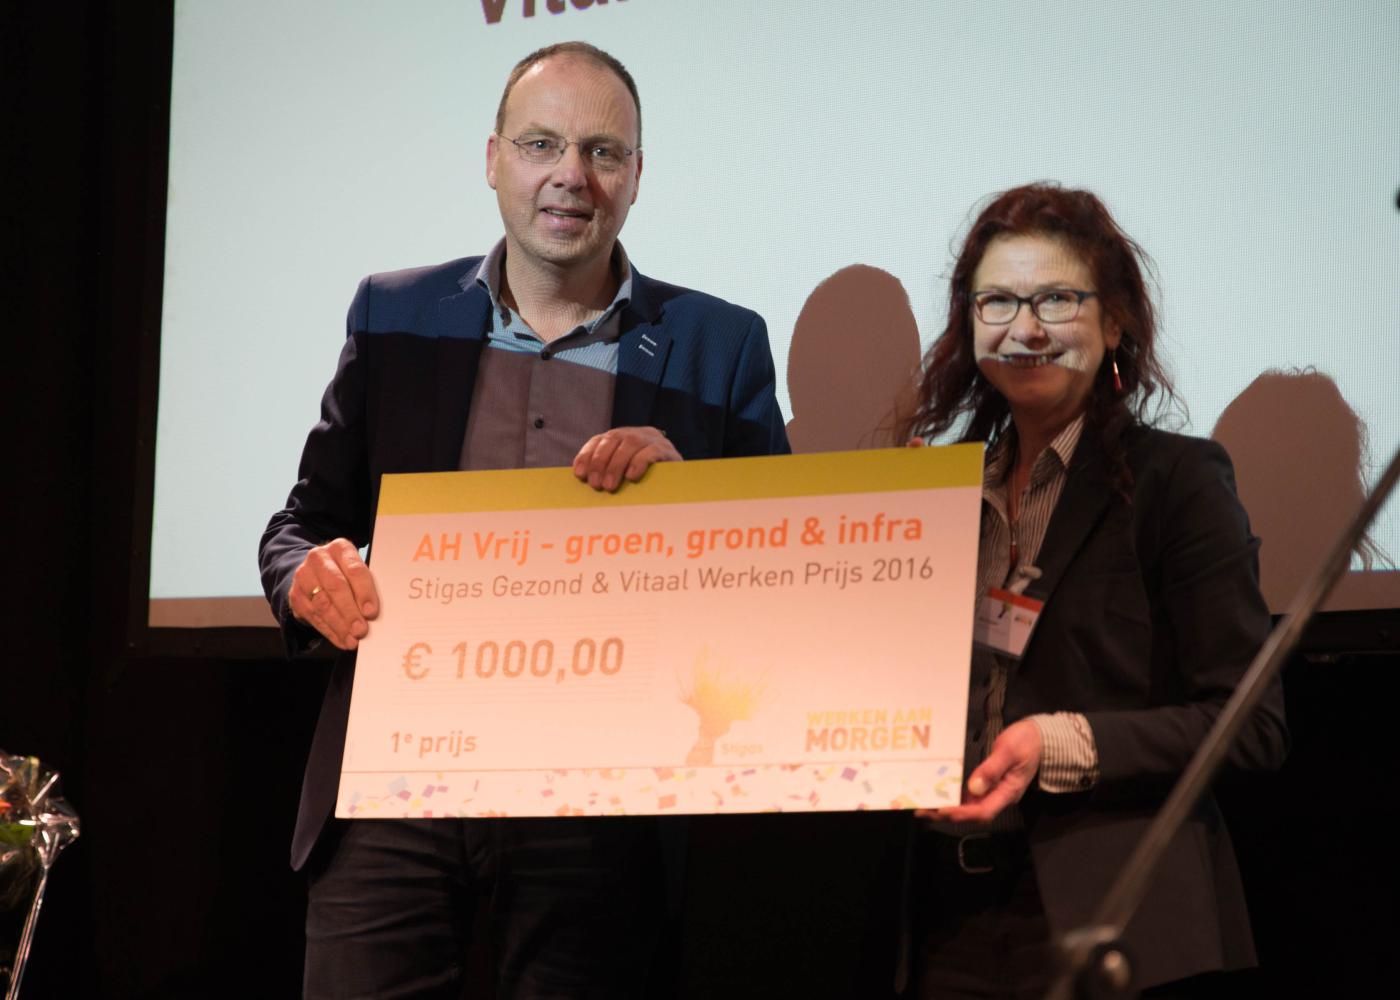 AH Vrij - Groen, Grond & Infra wint Stigas Gezond & Vitaal Werken Prijs 2016